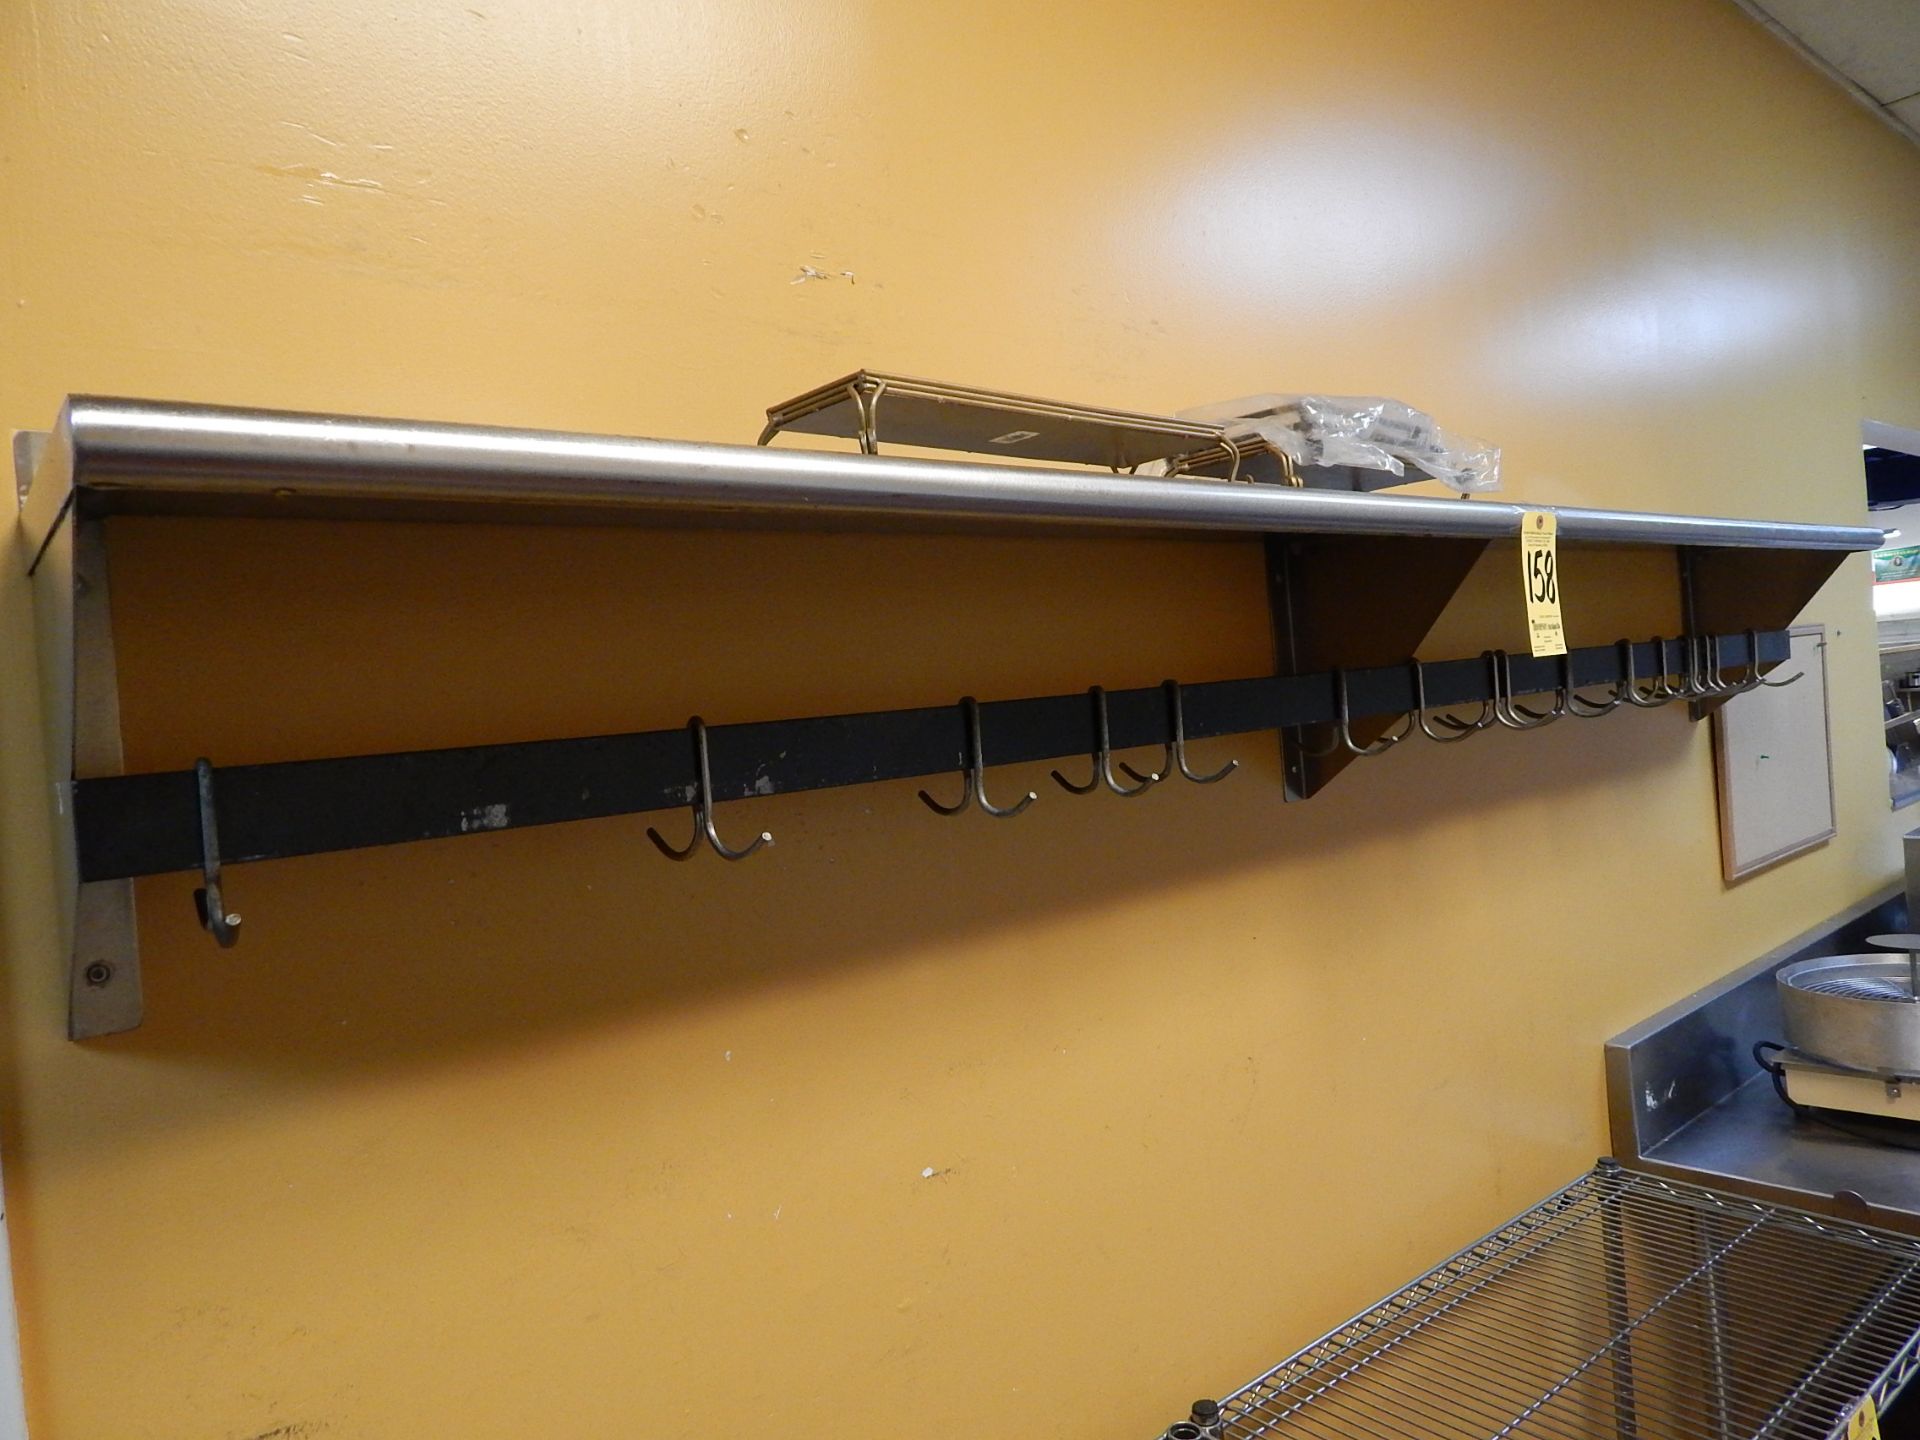 Stainless Steel Wall Shelf, 12"x 96" w/ Hangers